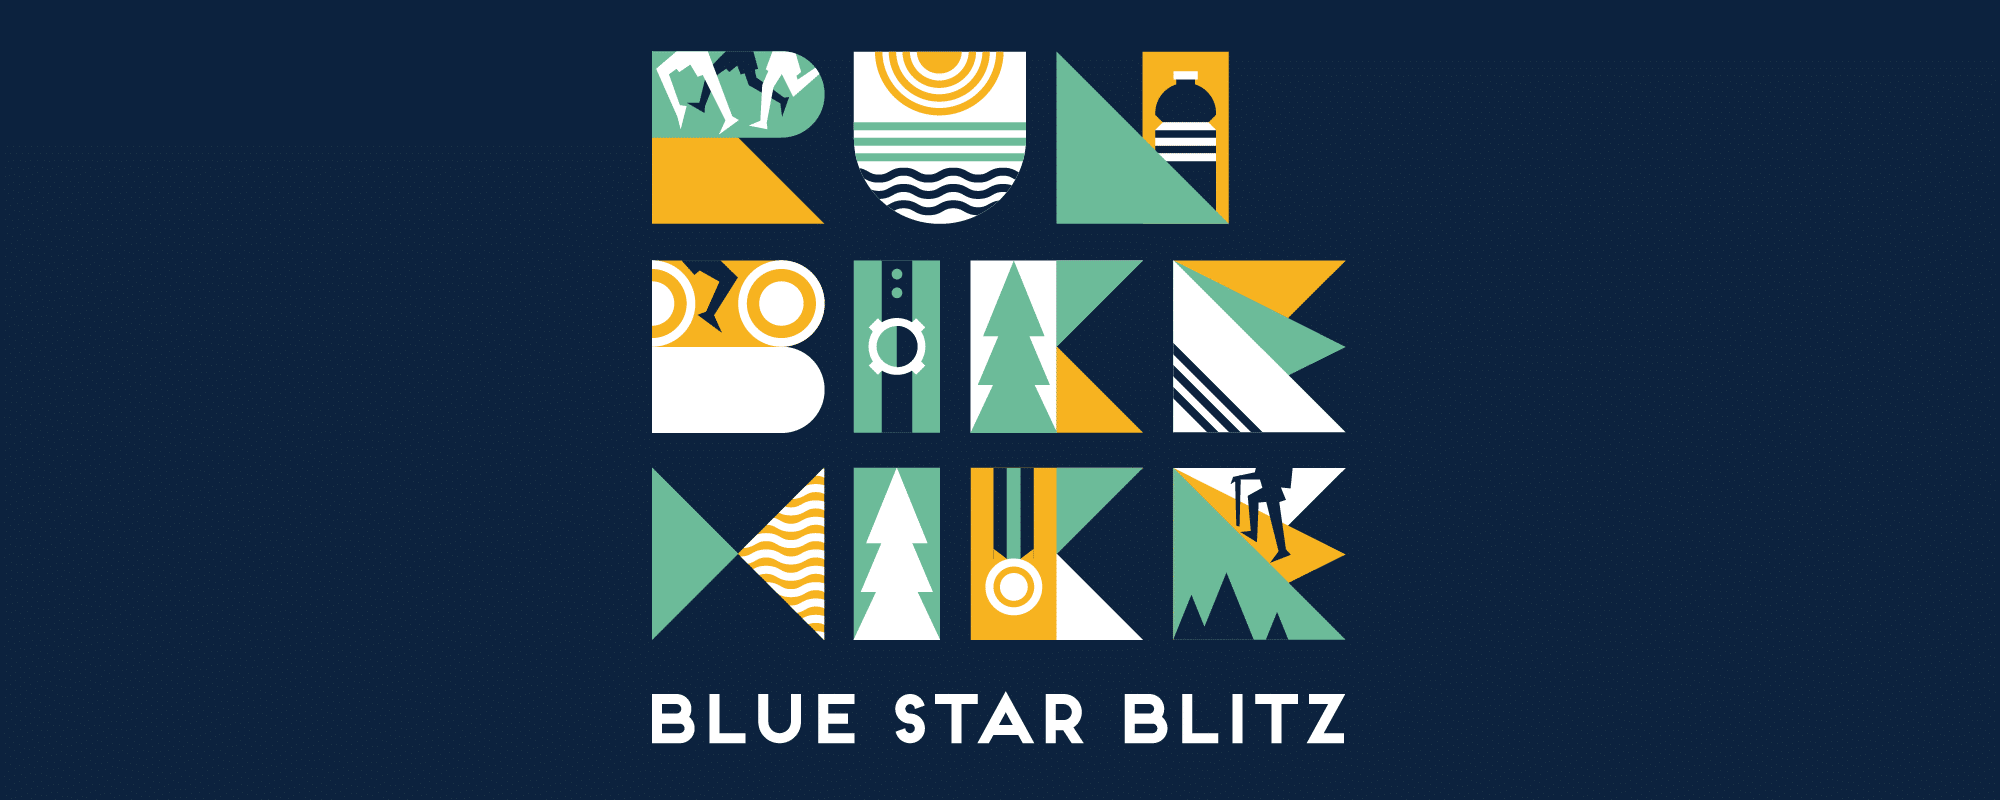 alt=Logo of the Blue Star Blitz